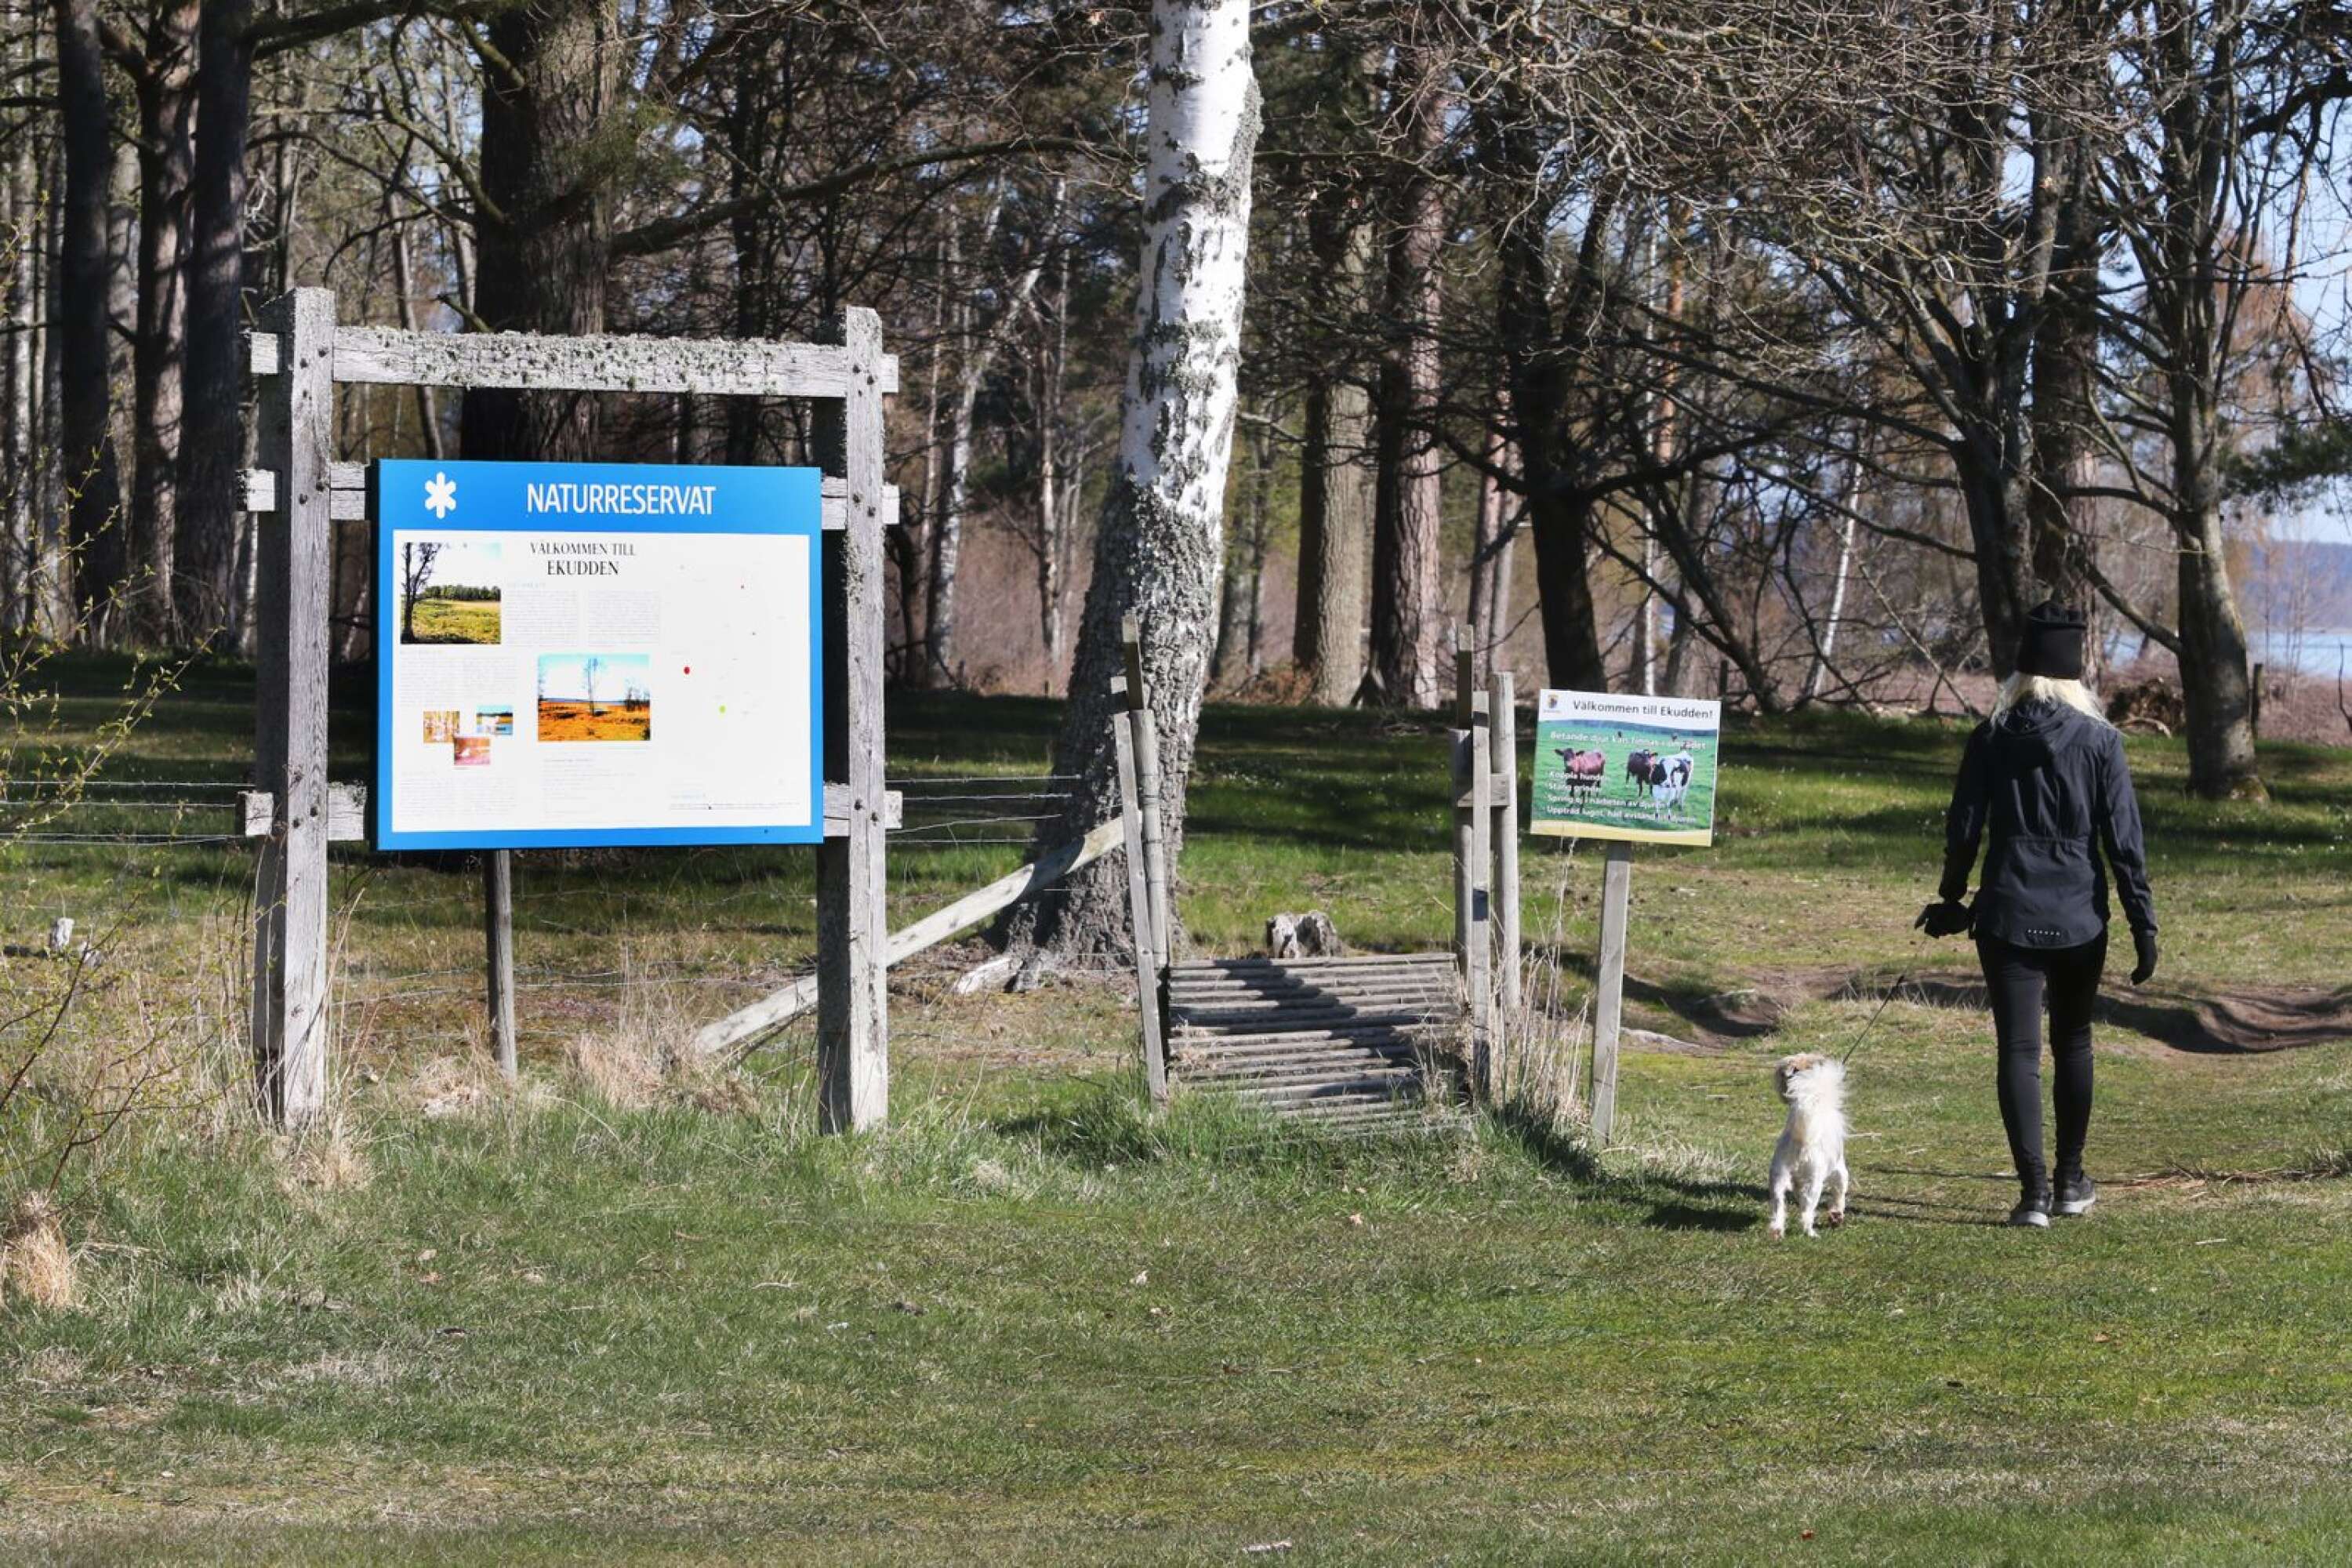 Bara en kort promenad från Mariestads centrum finns två naturreservat med en vandringsled utmed Vänerkanten.